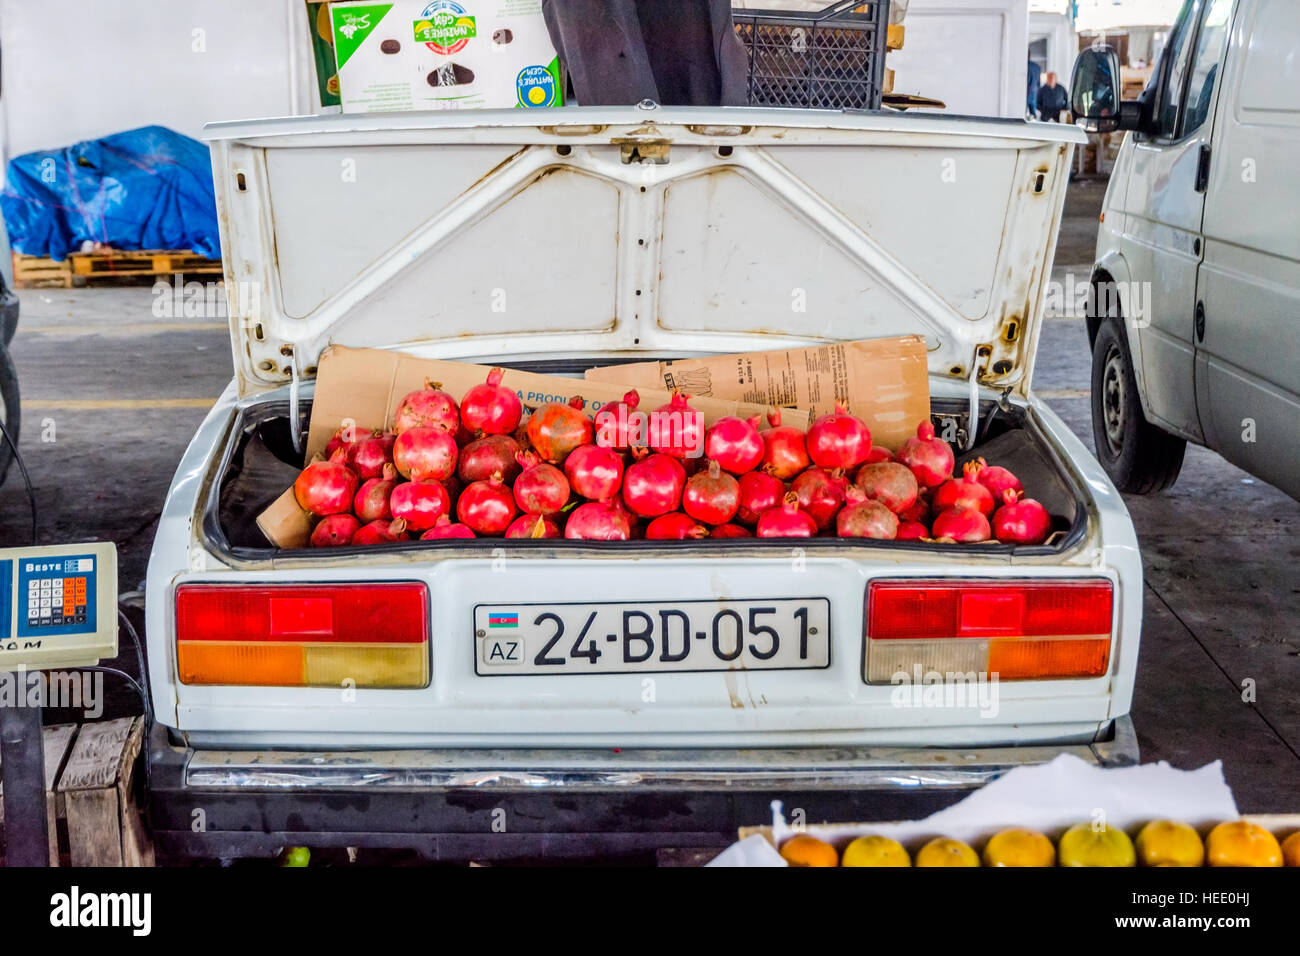 BAKU, AZERBAIJAN - SEPTEMBER 24: Ripe pomegranates for sale in old soviet Lada car in local market. September 2016 Stock Photo